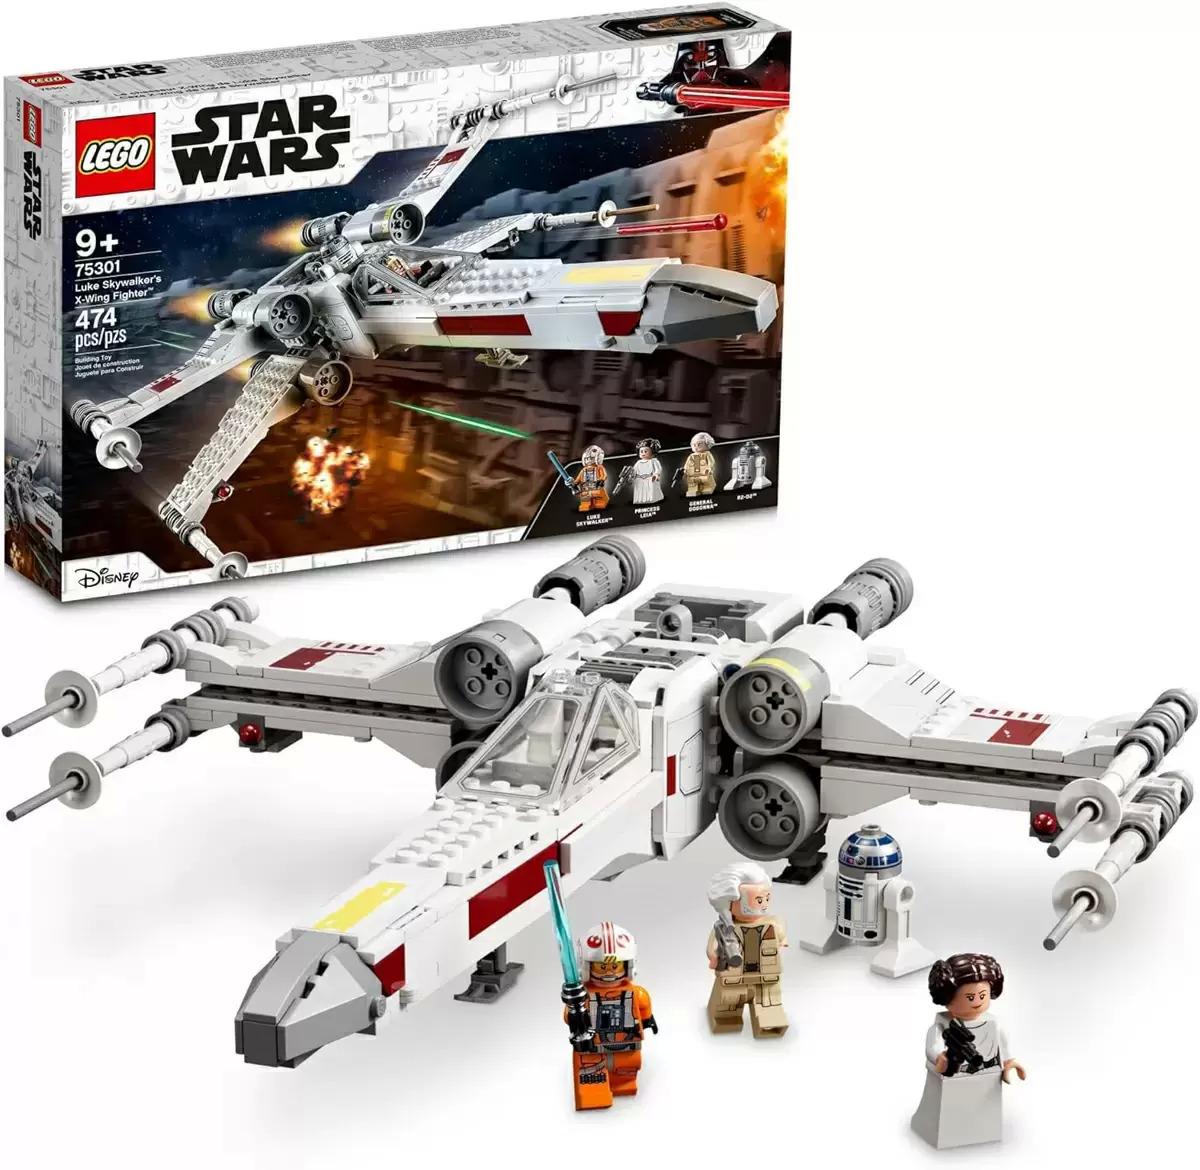 LEGO Star Wars Luke Skywalkers X-Wing Fighter 75301 for $34.99